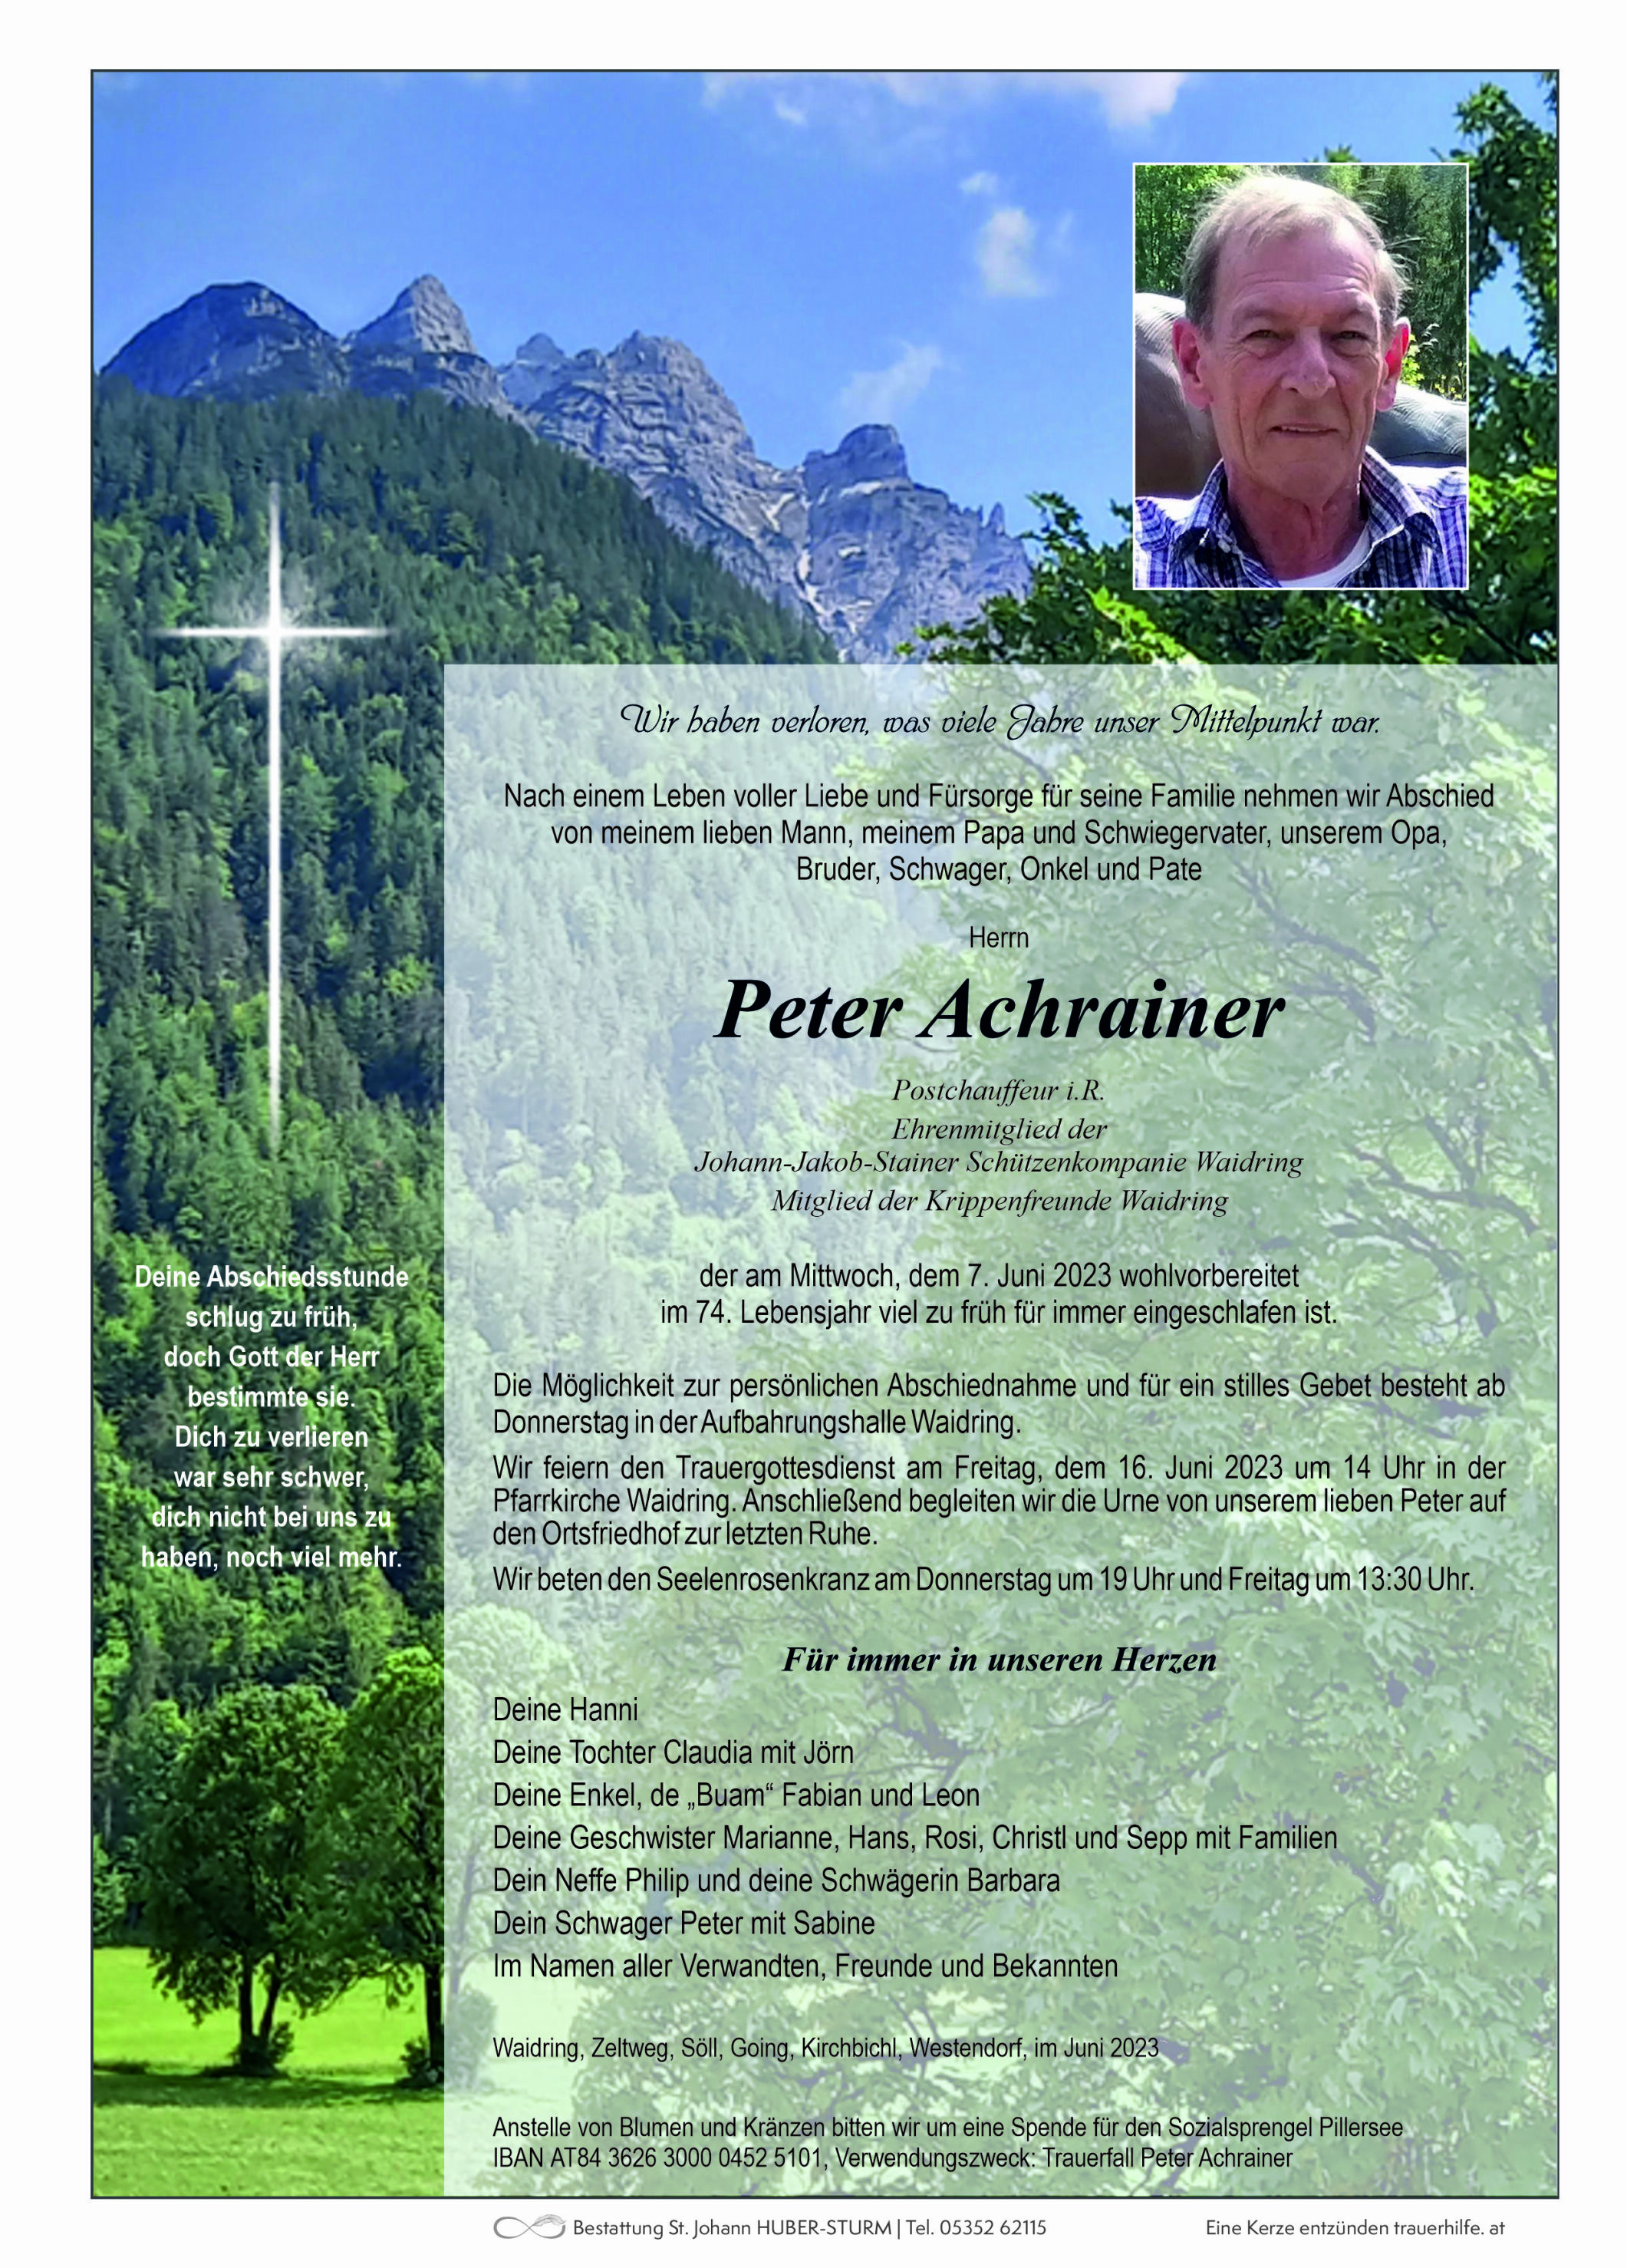 Peter Achrainer